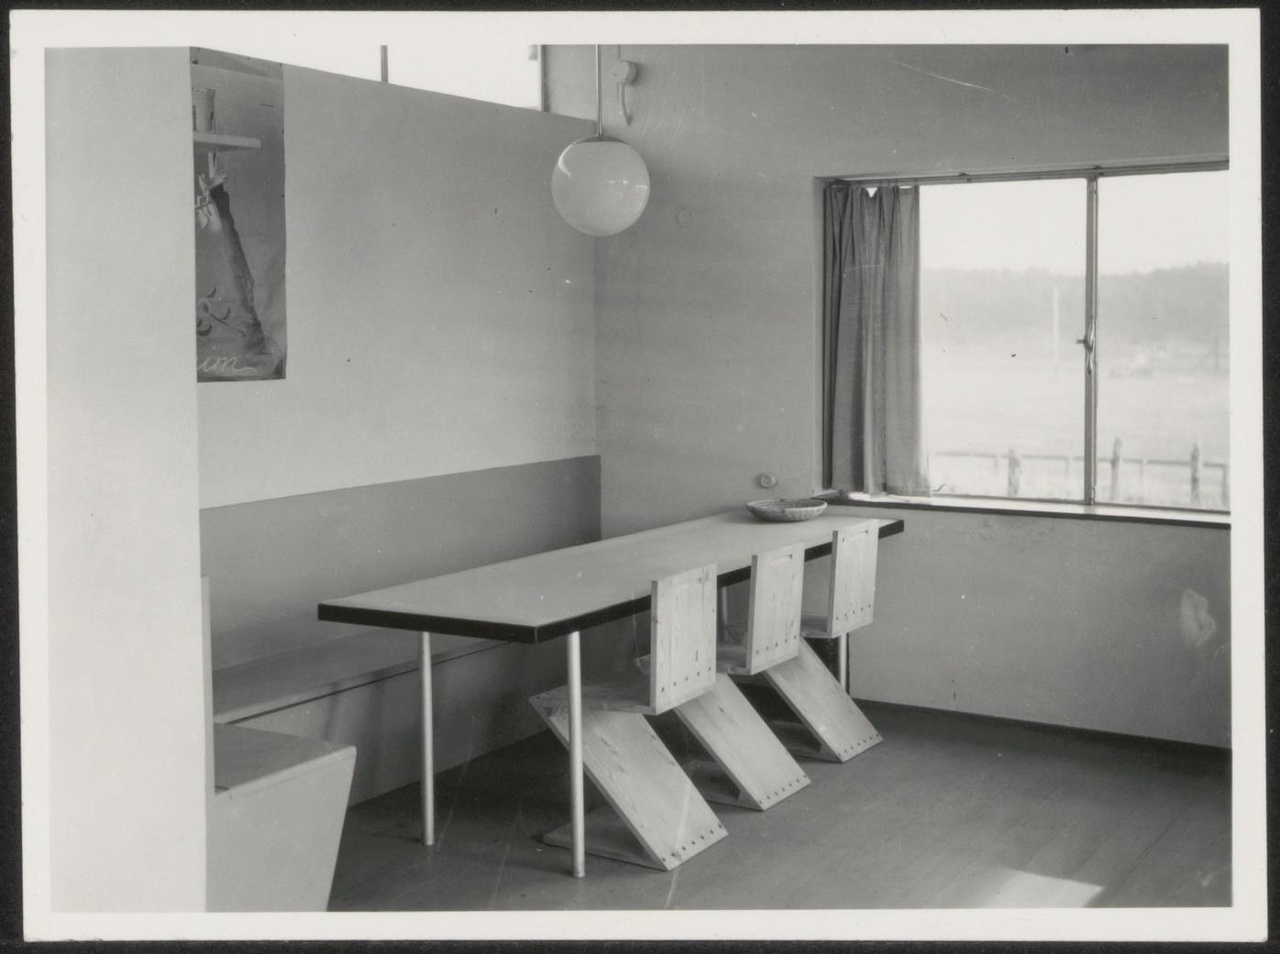 Afbeelding van zomerhuis Brandt Corstius,ca.1939, eethoek zonder theewagen